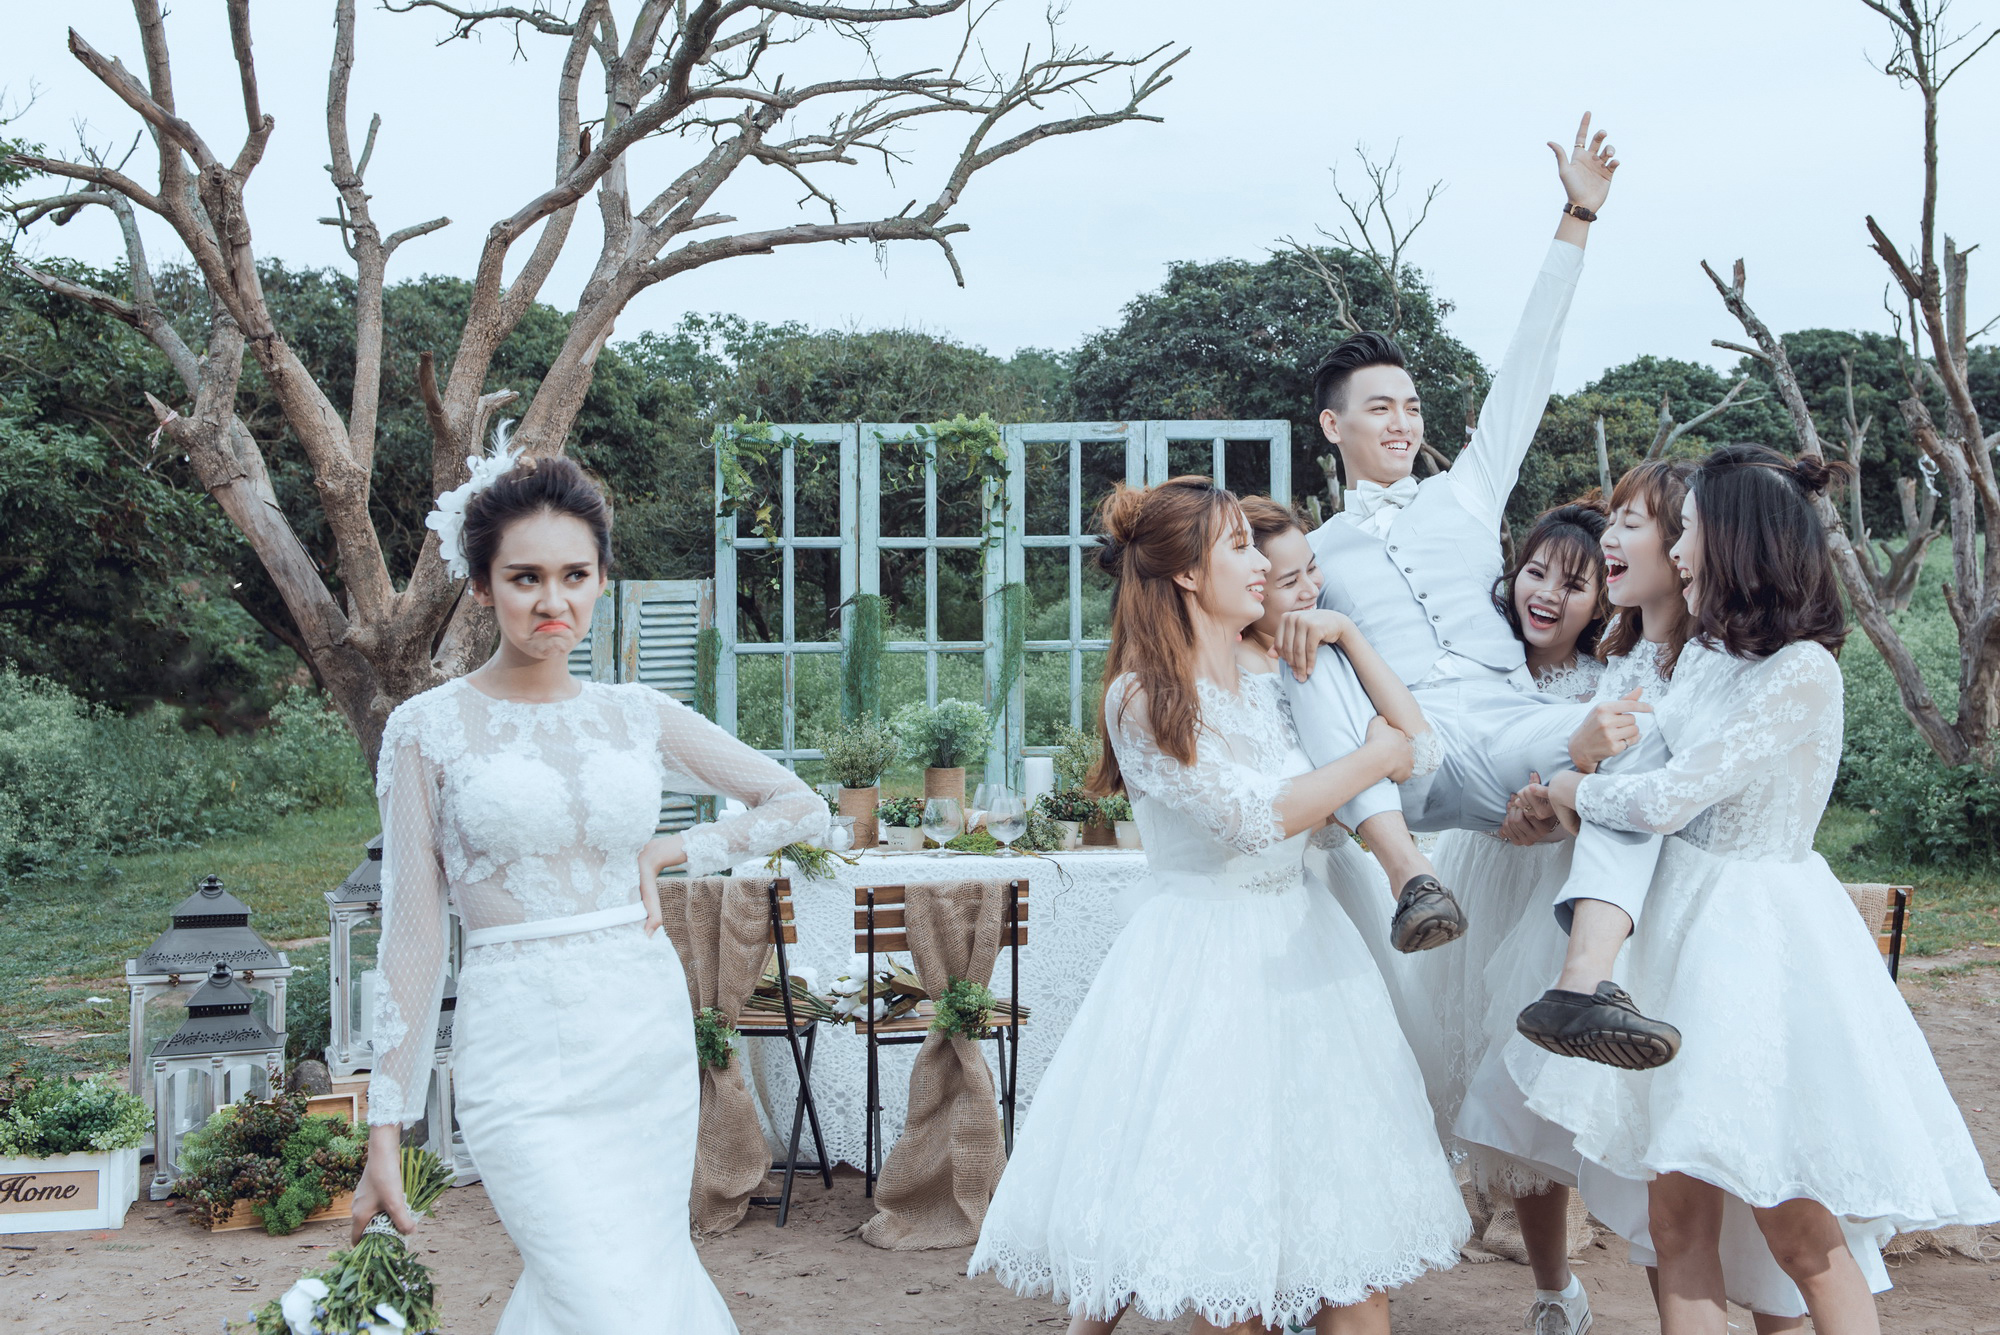 Ảnh cưới vui nhộn tại khu vườn nhãn, Hà Nội